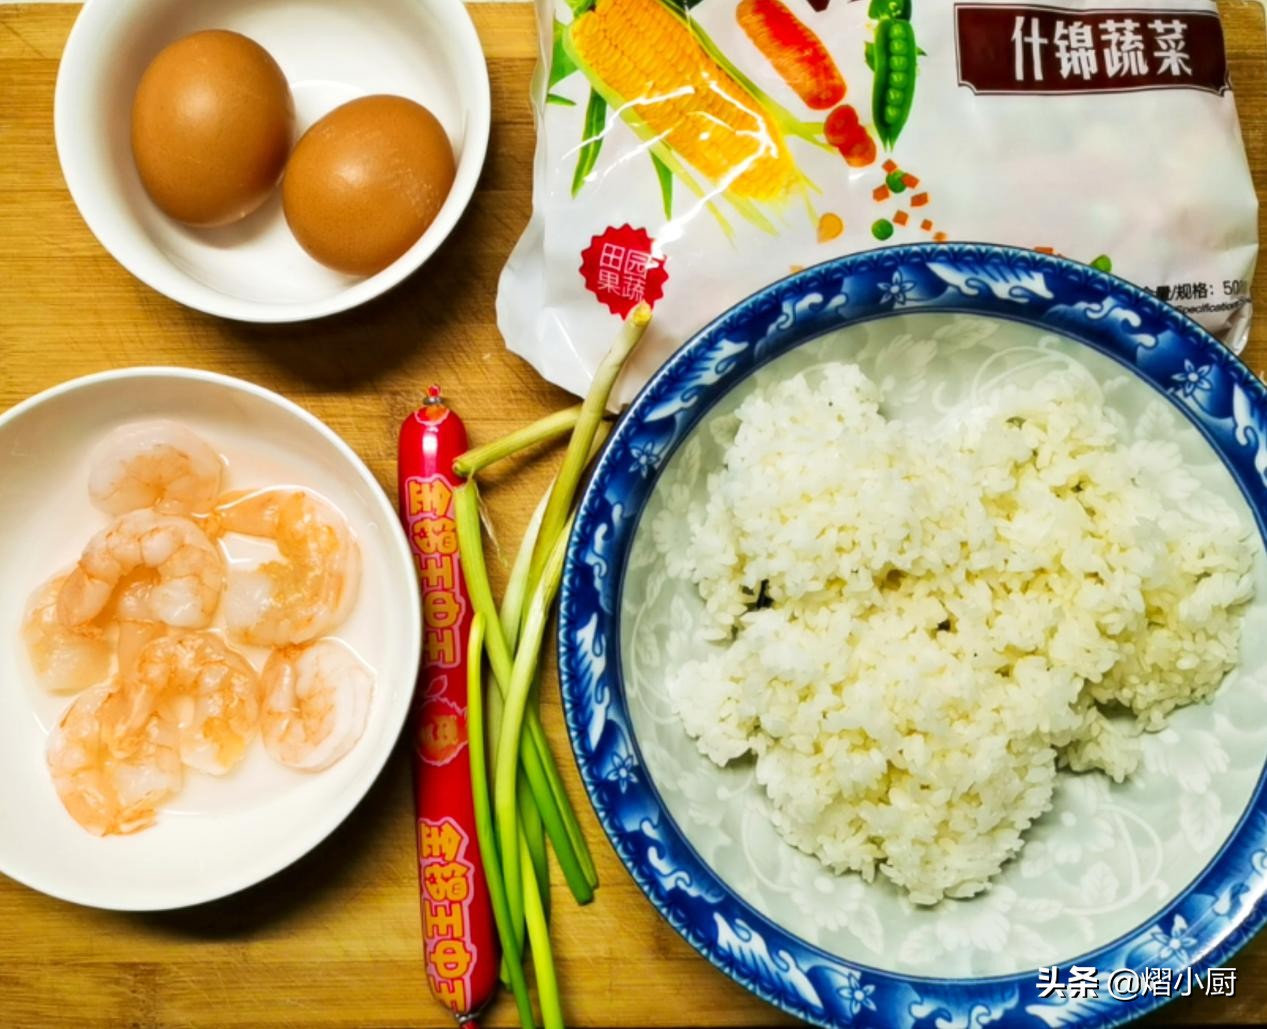 虾仁什锦炒饭，味道鲜香做法简单，只用了一种调味料，原味更好吃